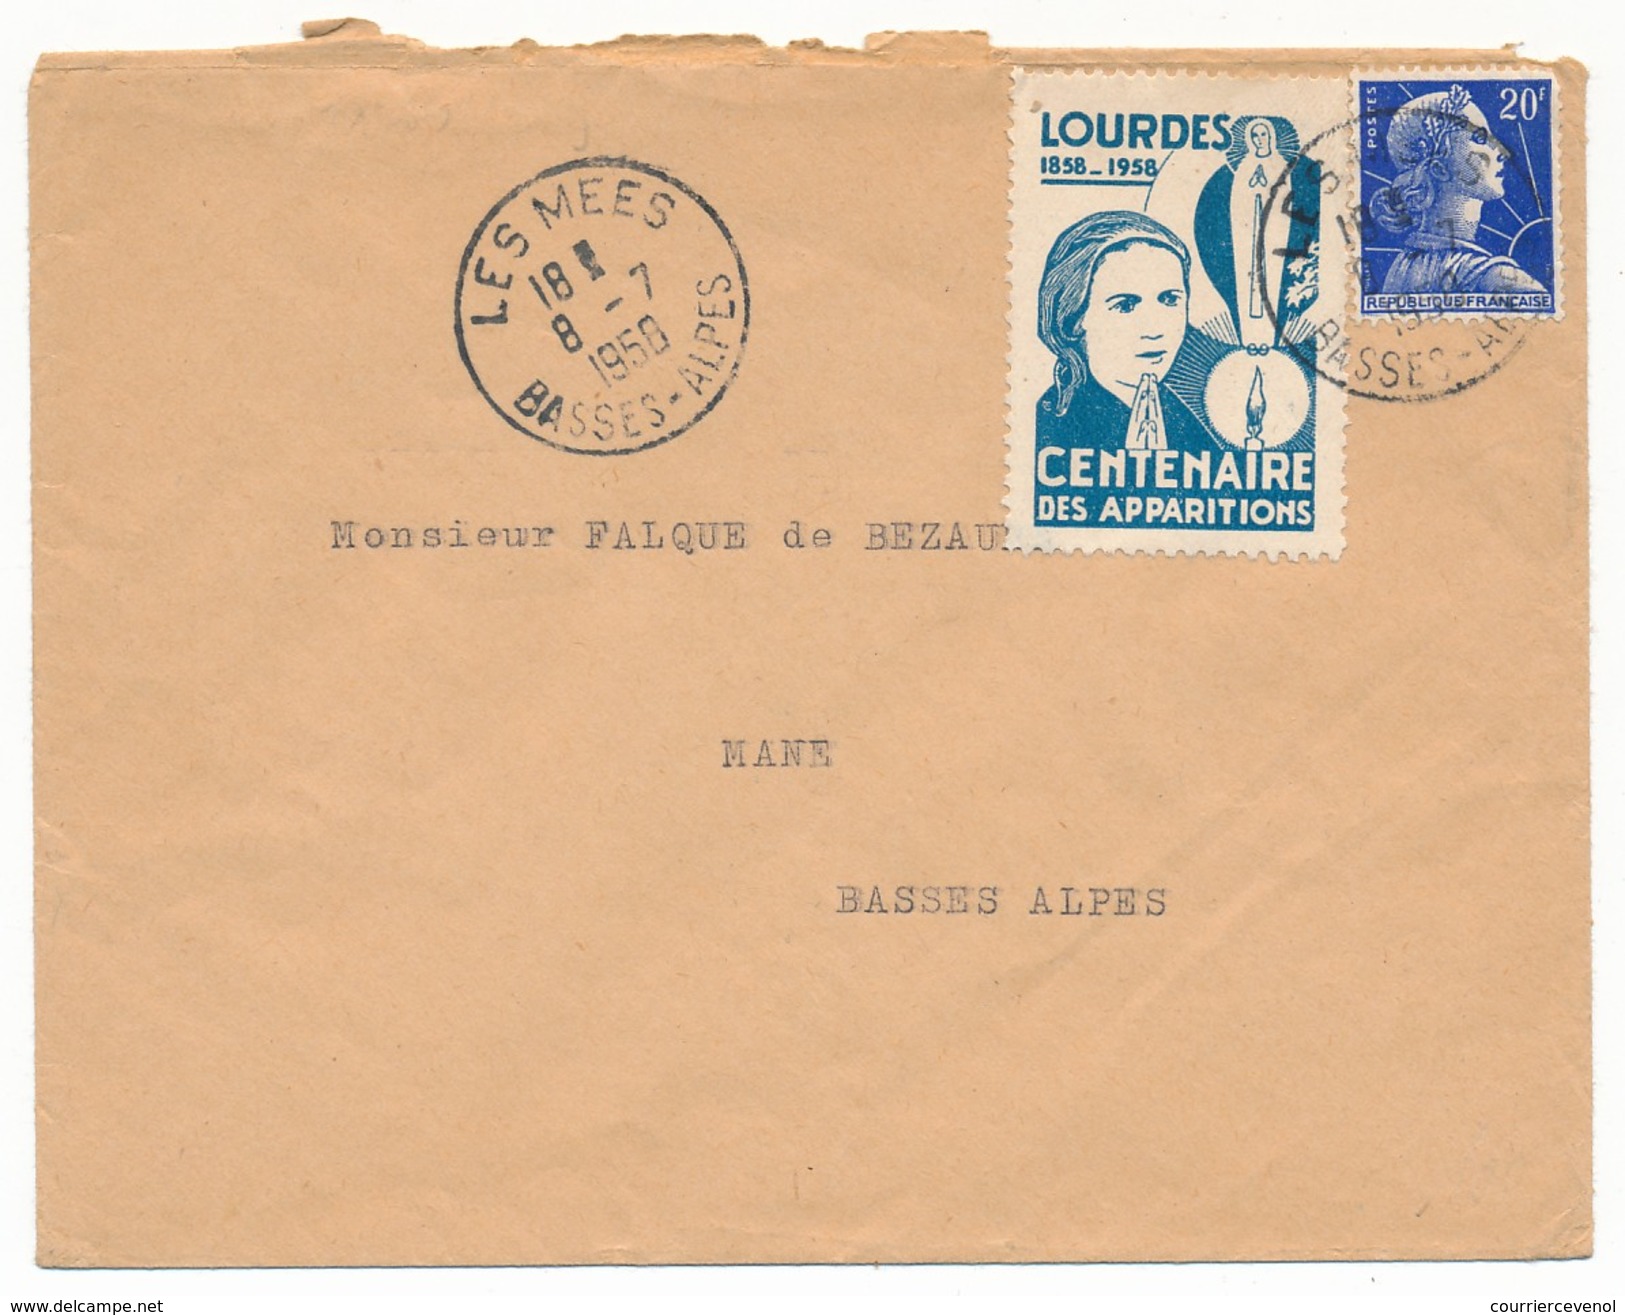 FRANCE => Vignette "LOURDES - Centenaire Des Apparitions" Sur Enveloppe - Les Mées Basses Alpes 1950 - Covers & Documents